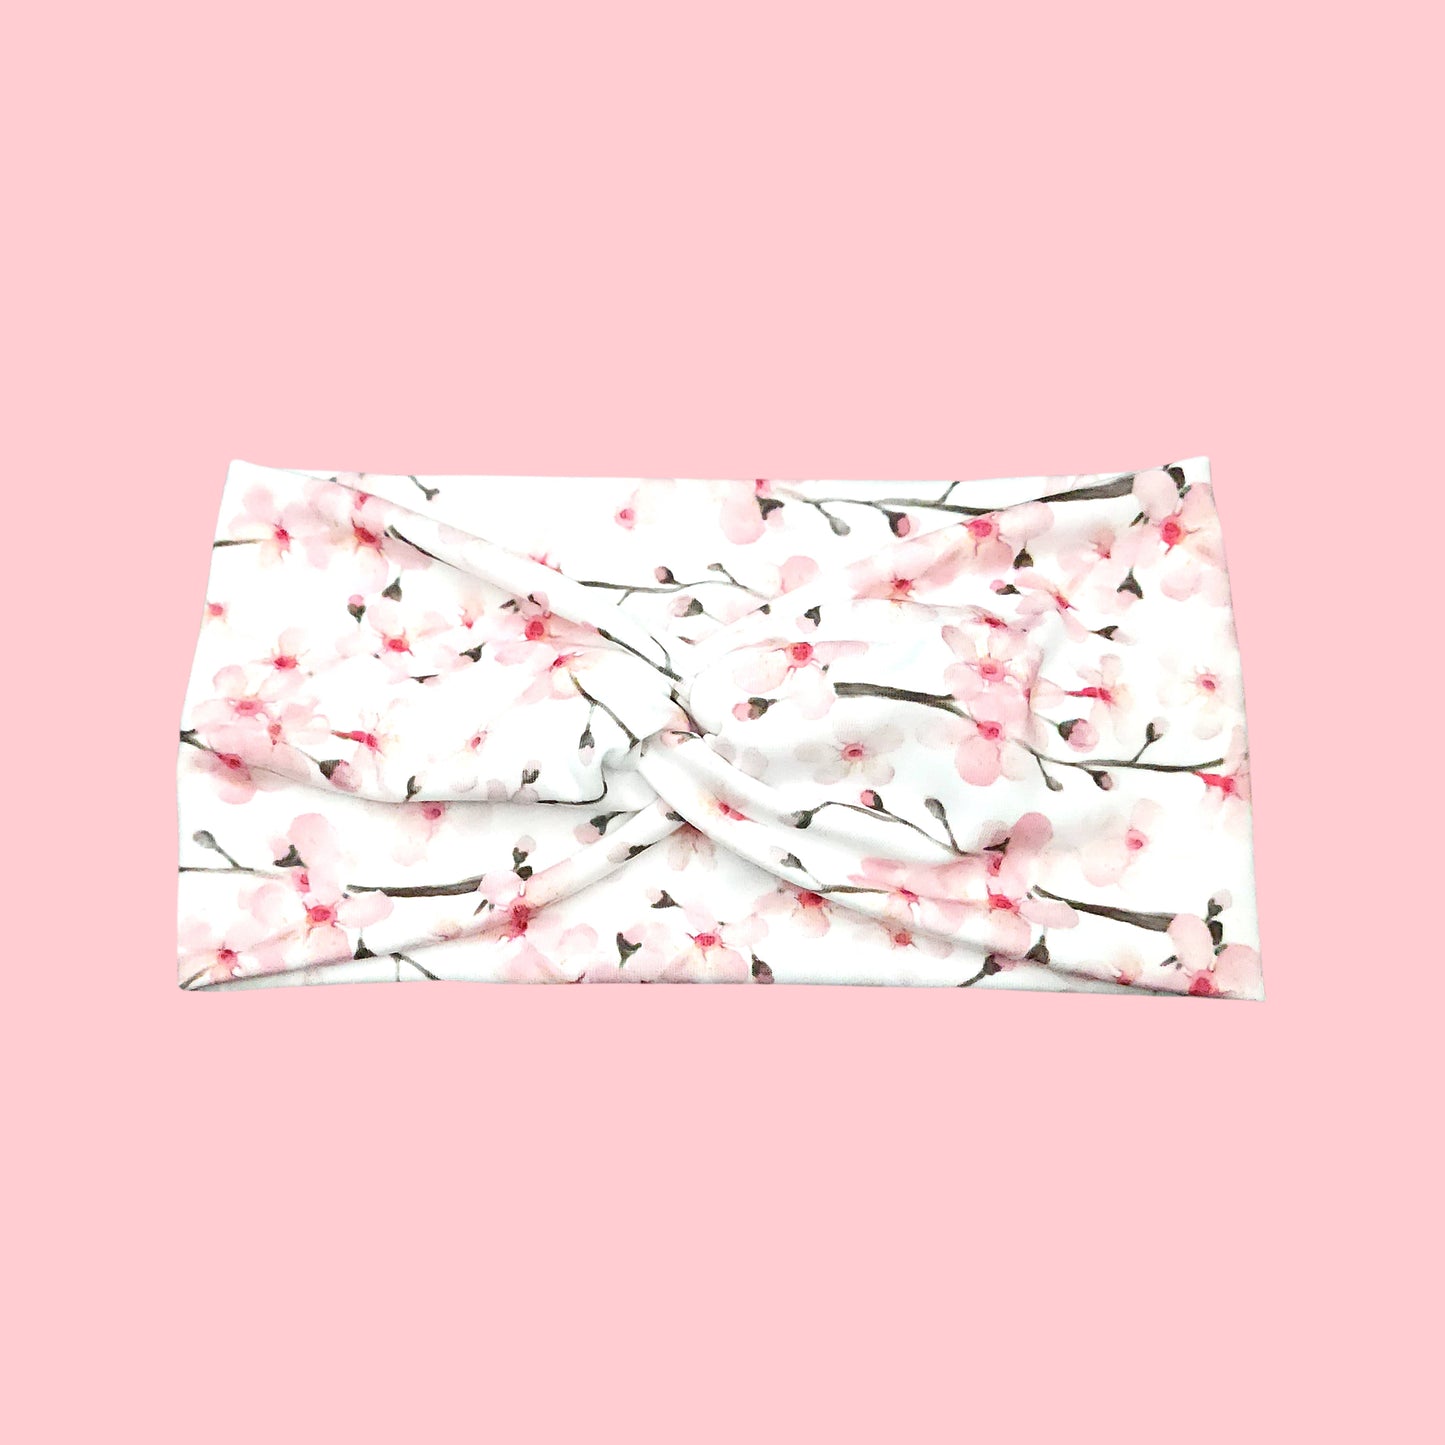 White Cherry Blossom Flower Headband for Women